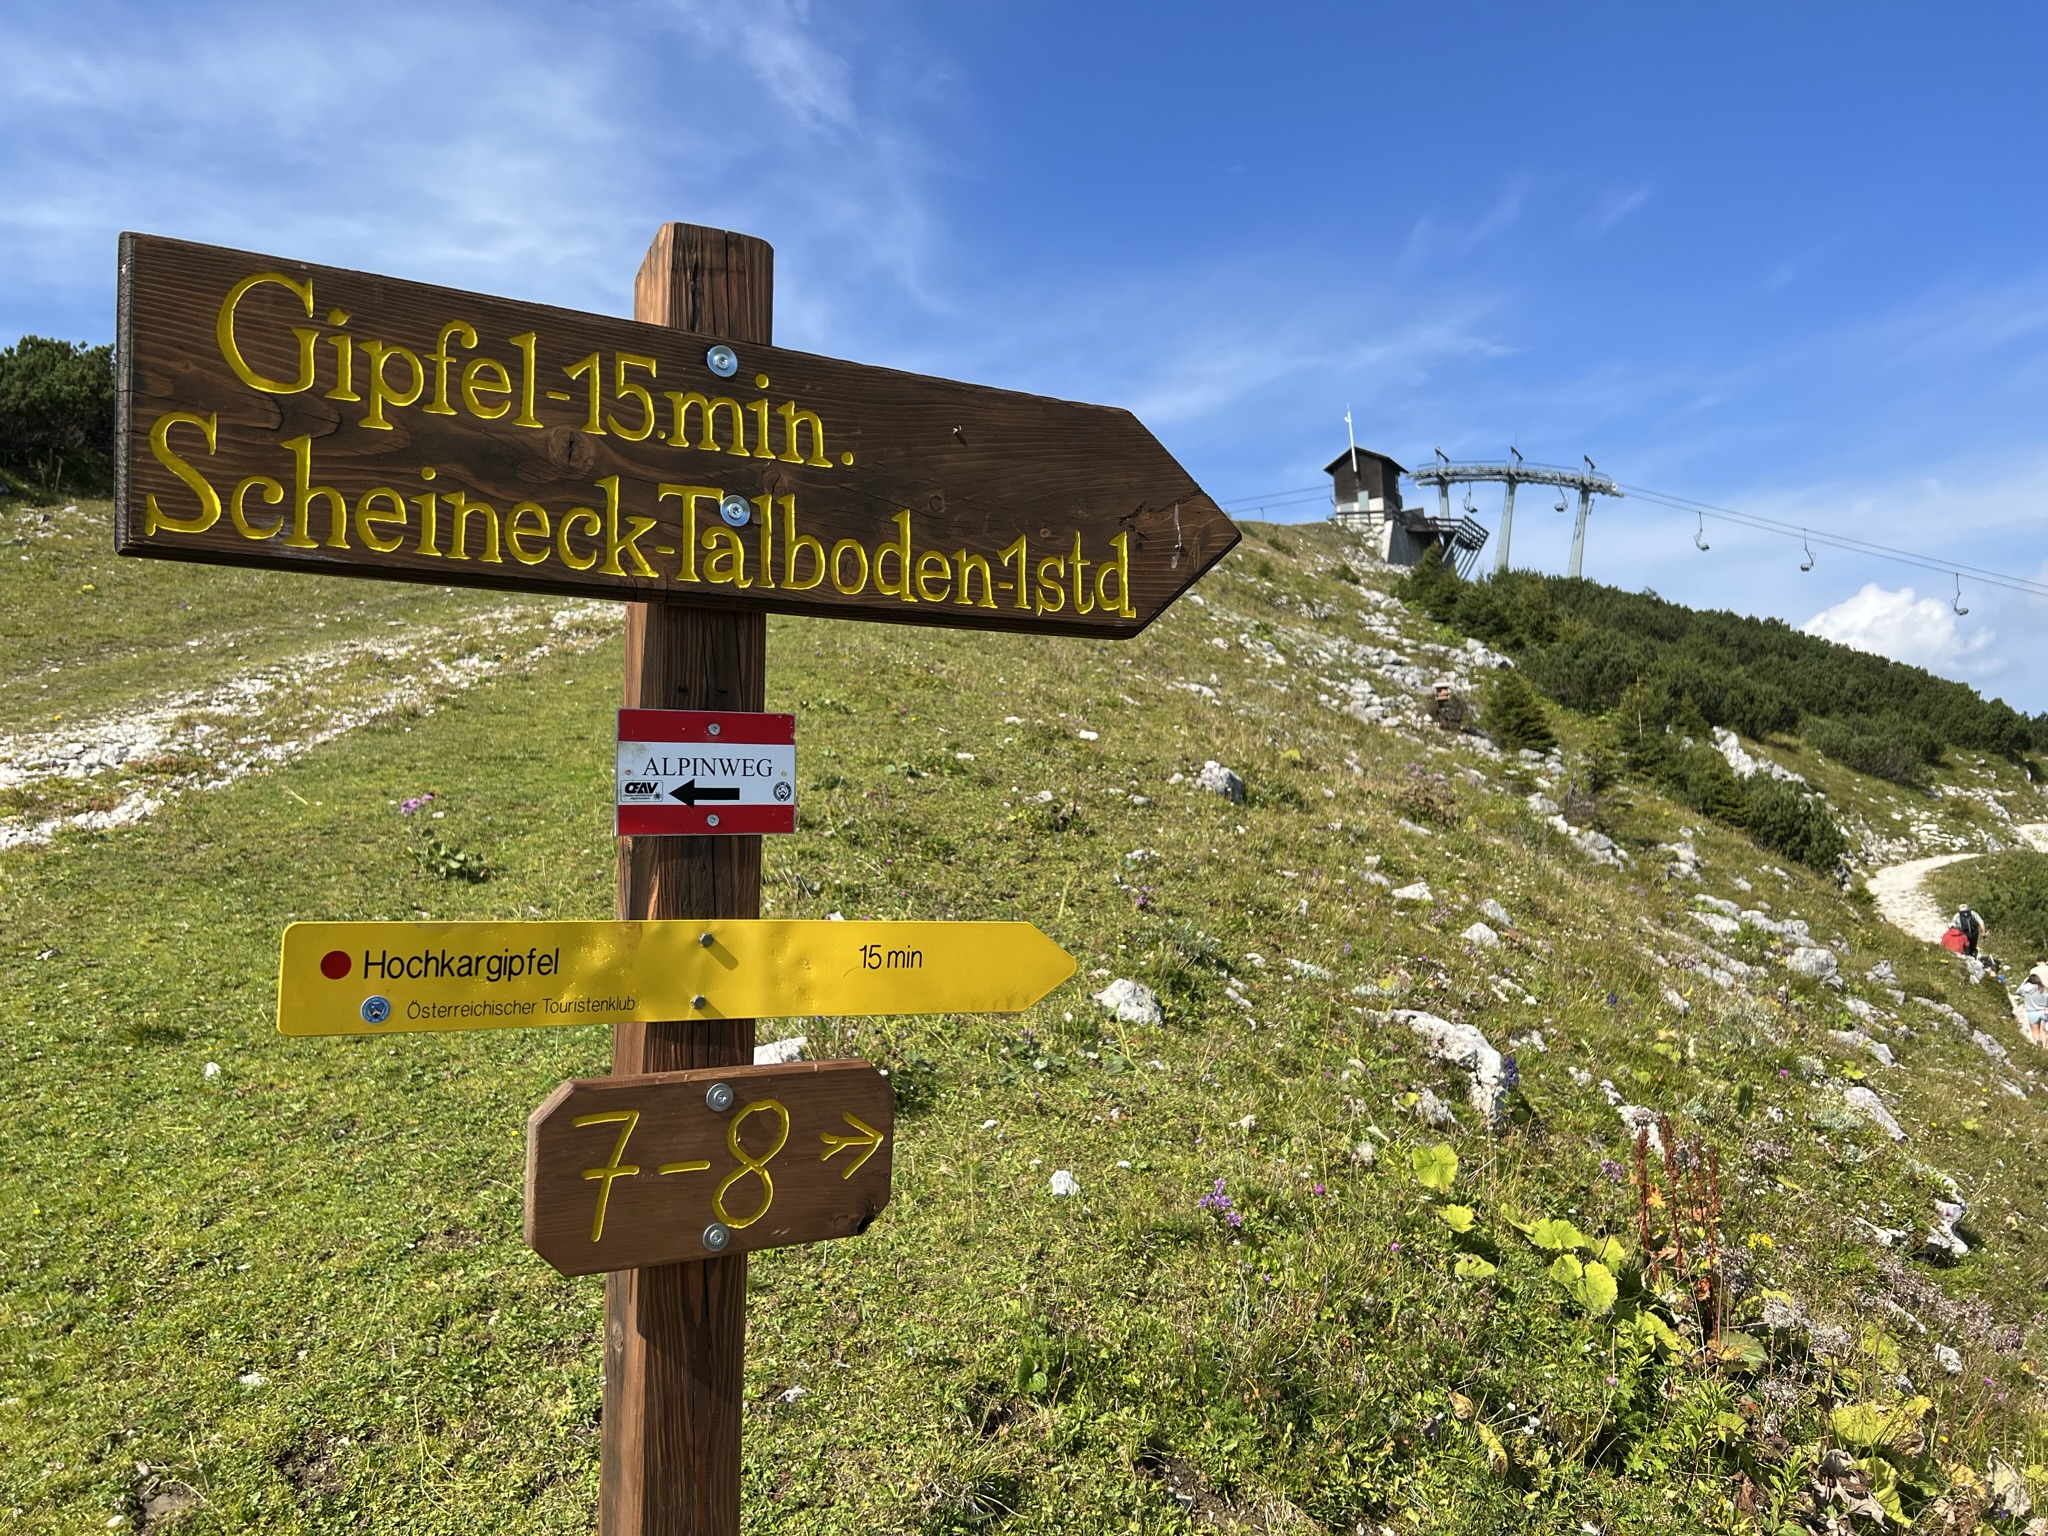 Hochkar: 360˚-Skytour und Wanderung zum Gipfelkreuz